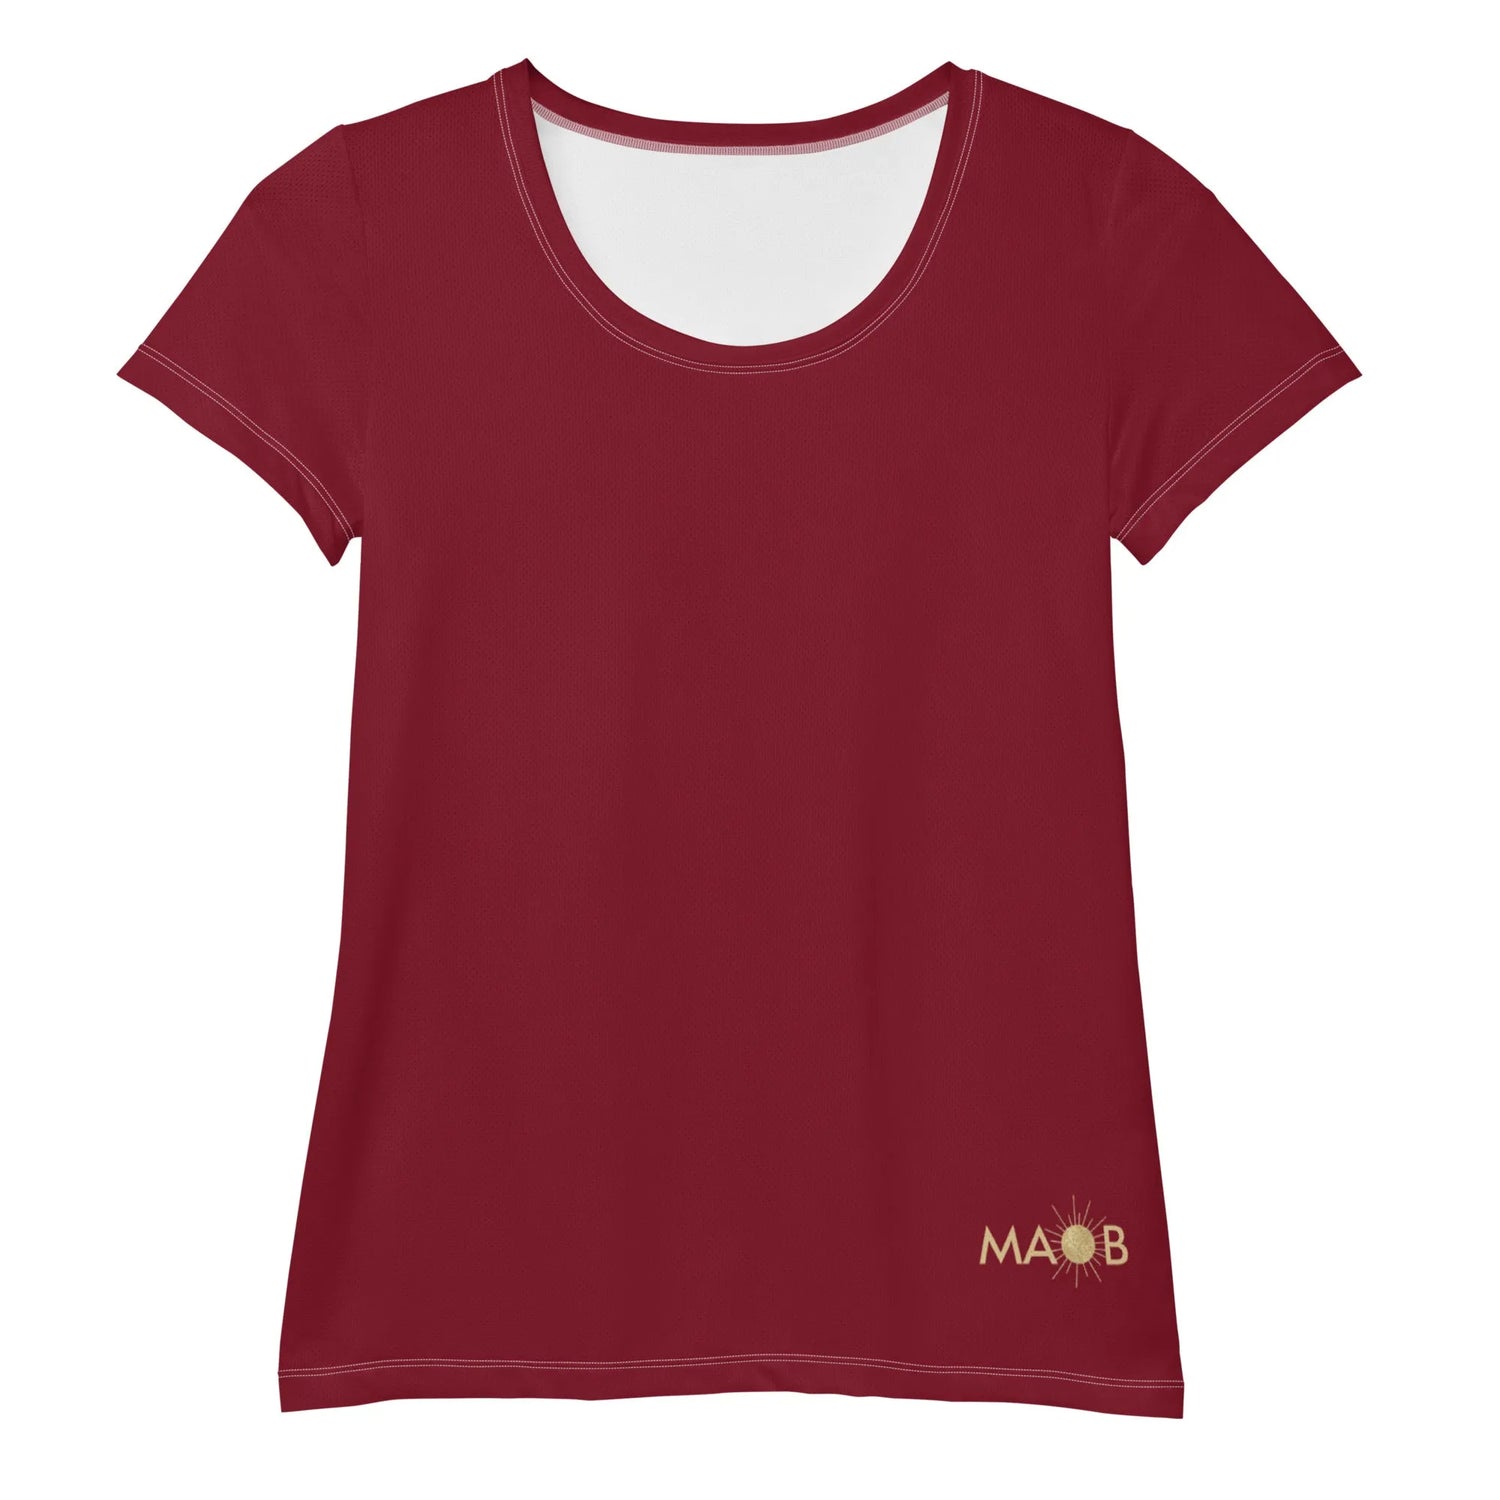 Damen Sport-T-Shirt MAOB - FEUER